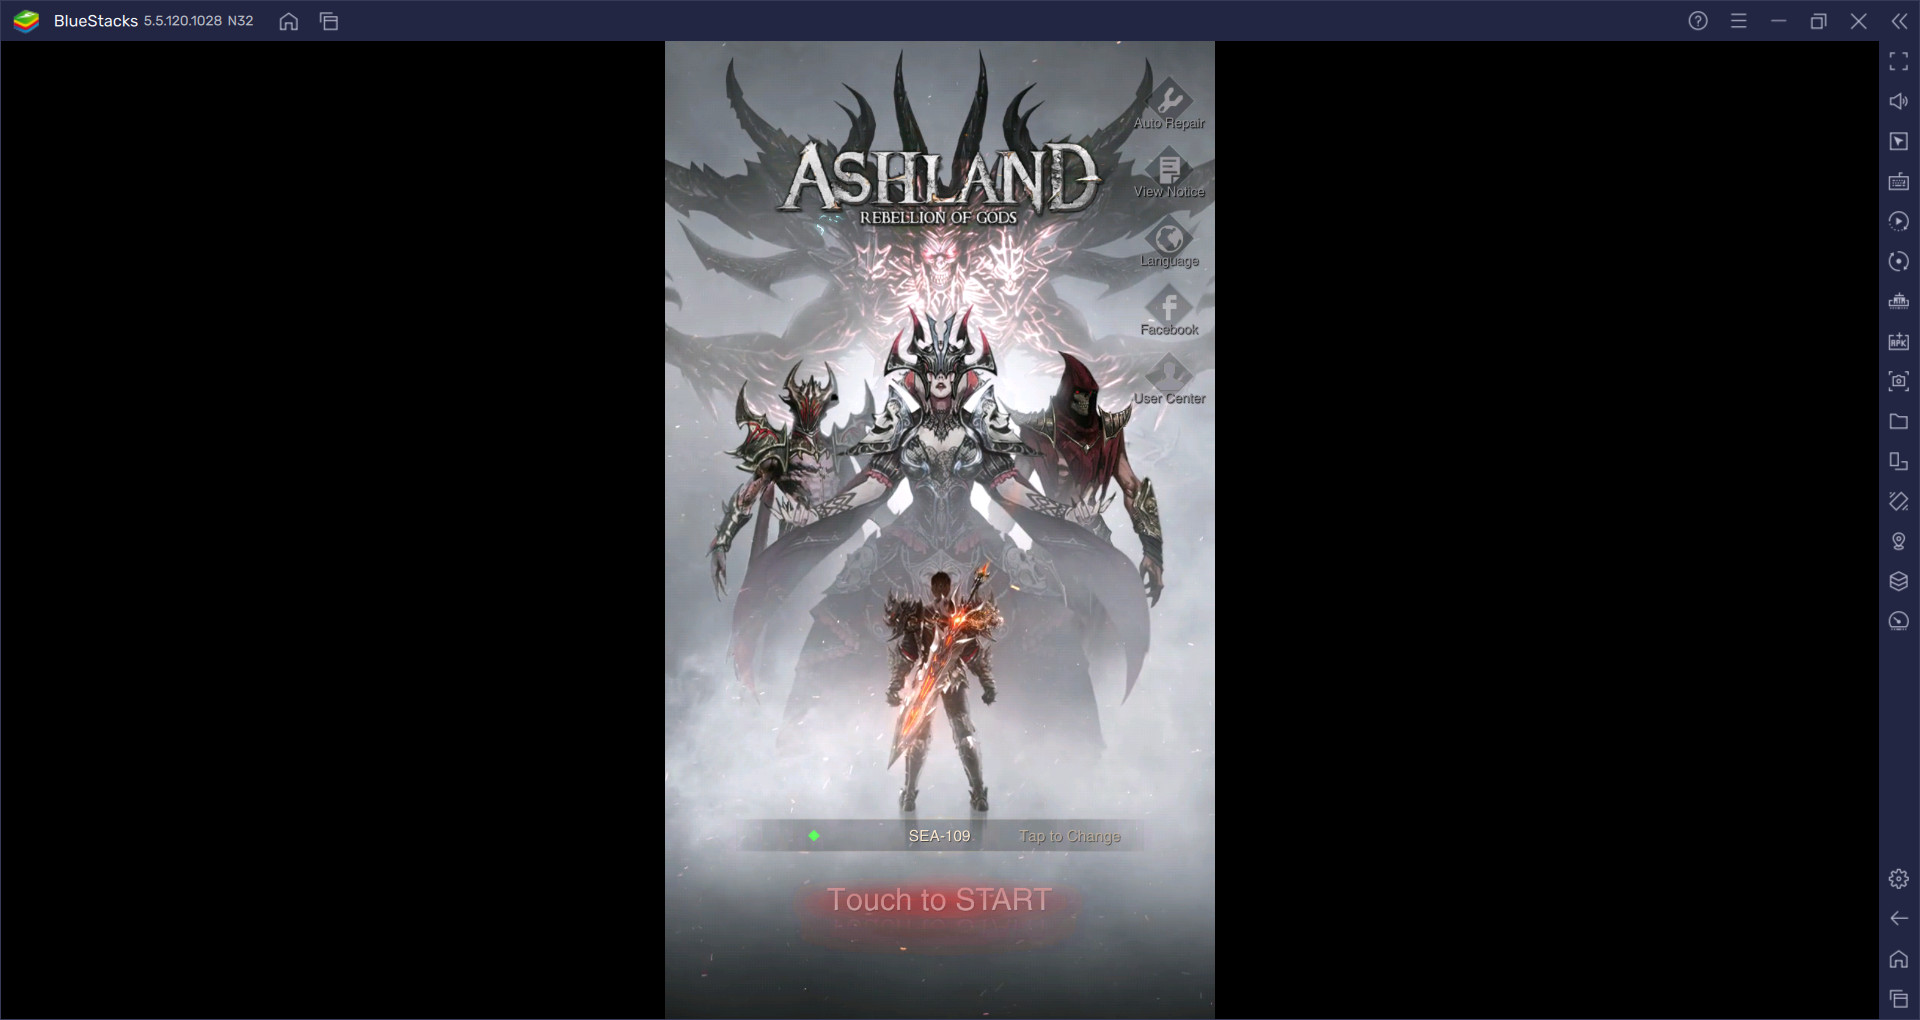 คู่มือเริ่มต้นเล่น Ashland: Rebellion of Gods สำหรับผู้เริ่มต้น